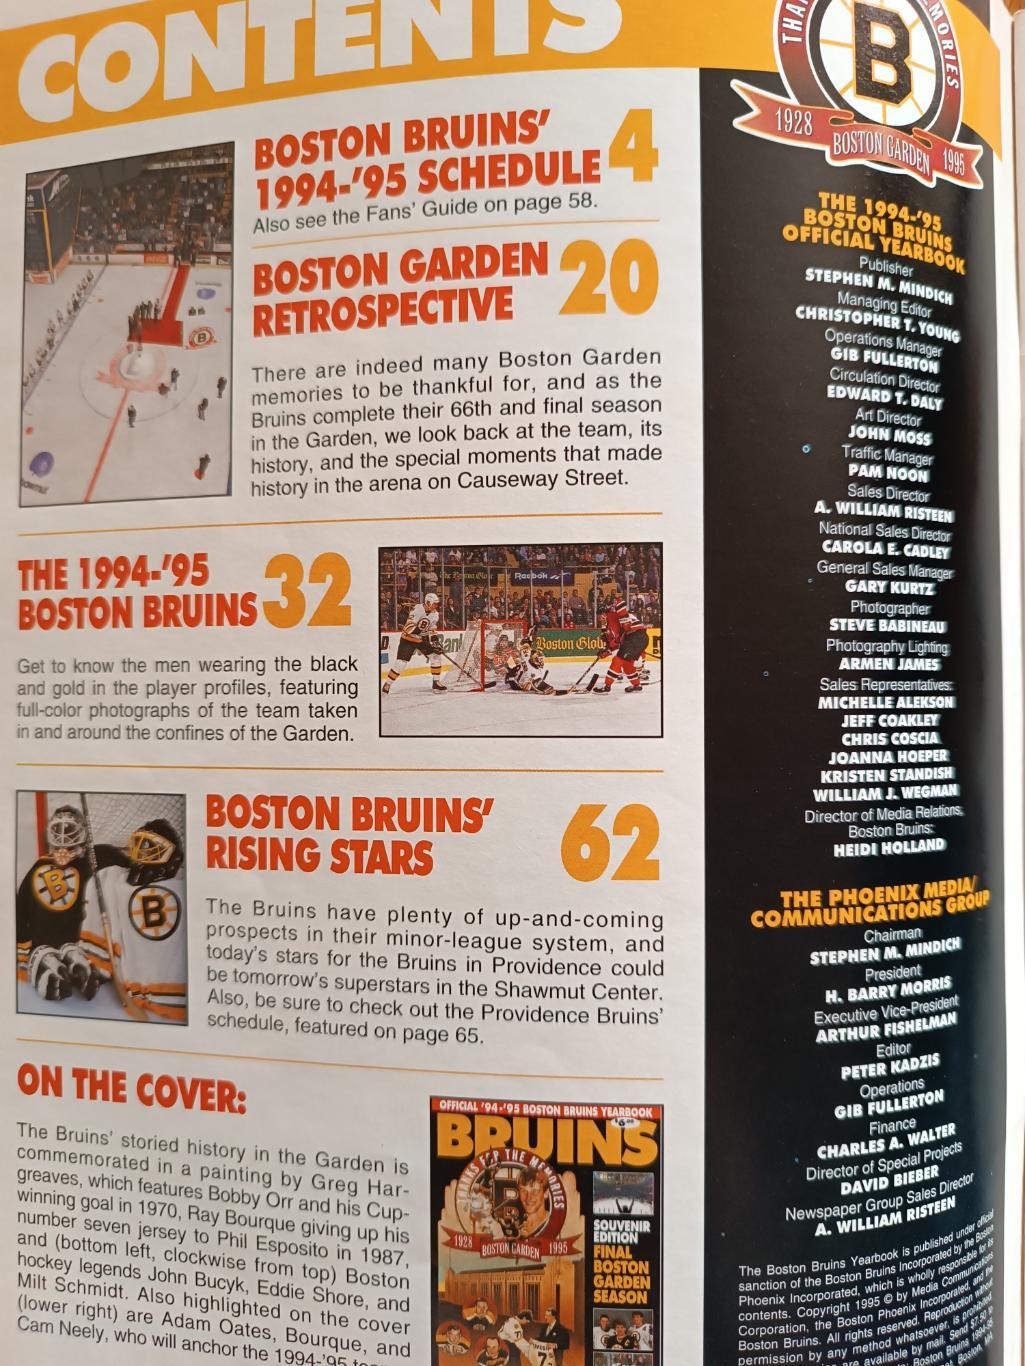 ХОККЕЙ АЛЬБОМ ЕЖЕГОДНИК НХЛ БОСТОН БРЮИНЗ 1994-95 NHL YEARBOOK BOSTON BRUINS 1